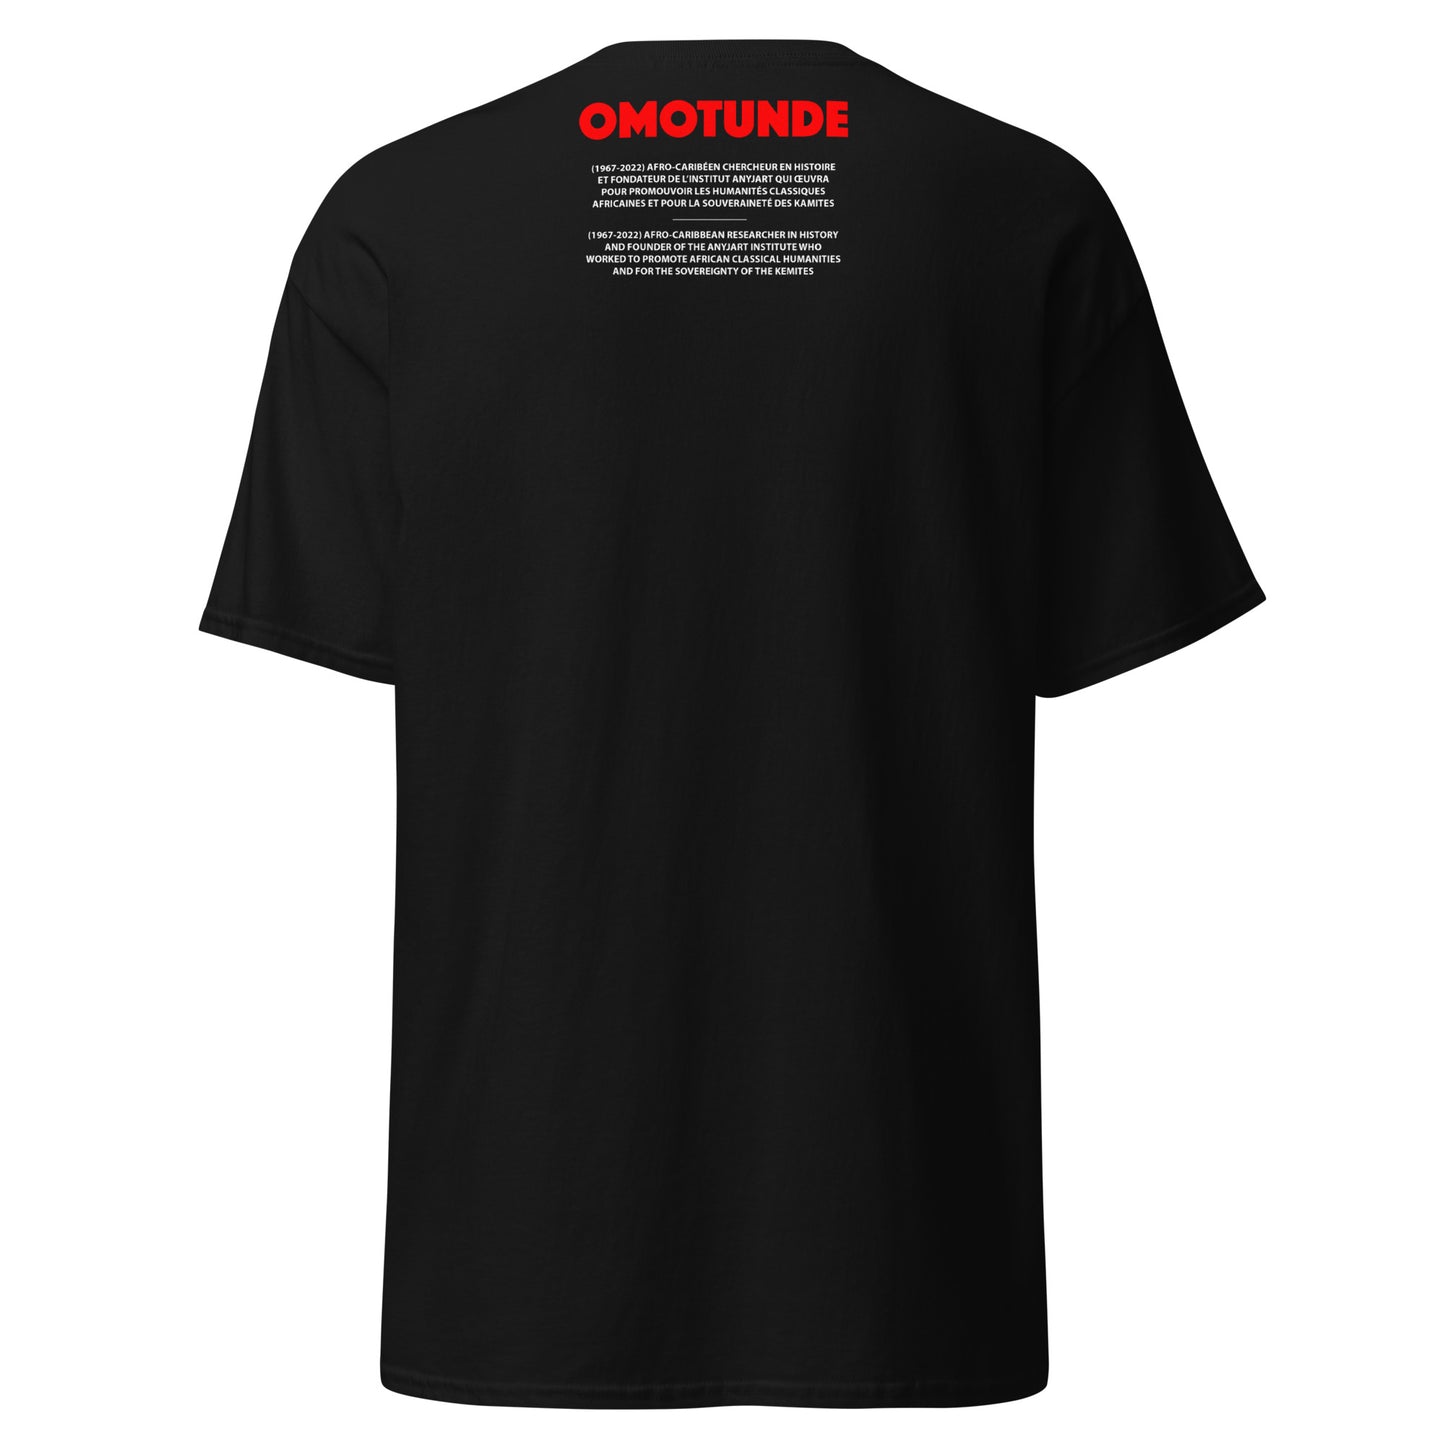 OMOTUNDE (T-shirt)